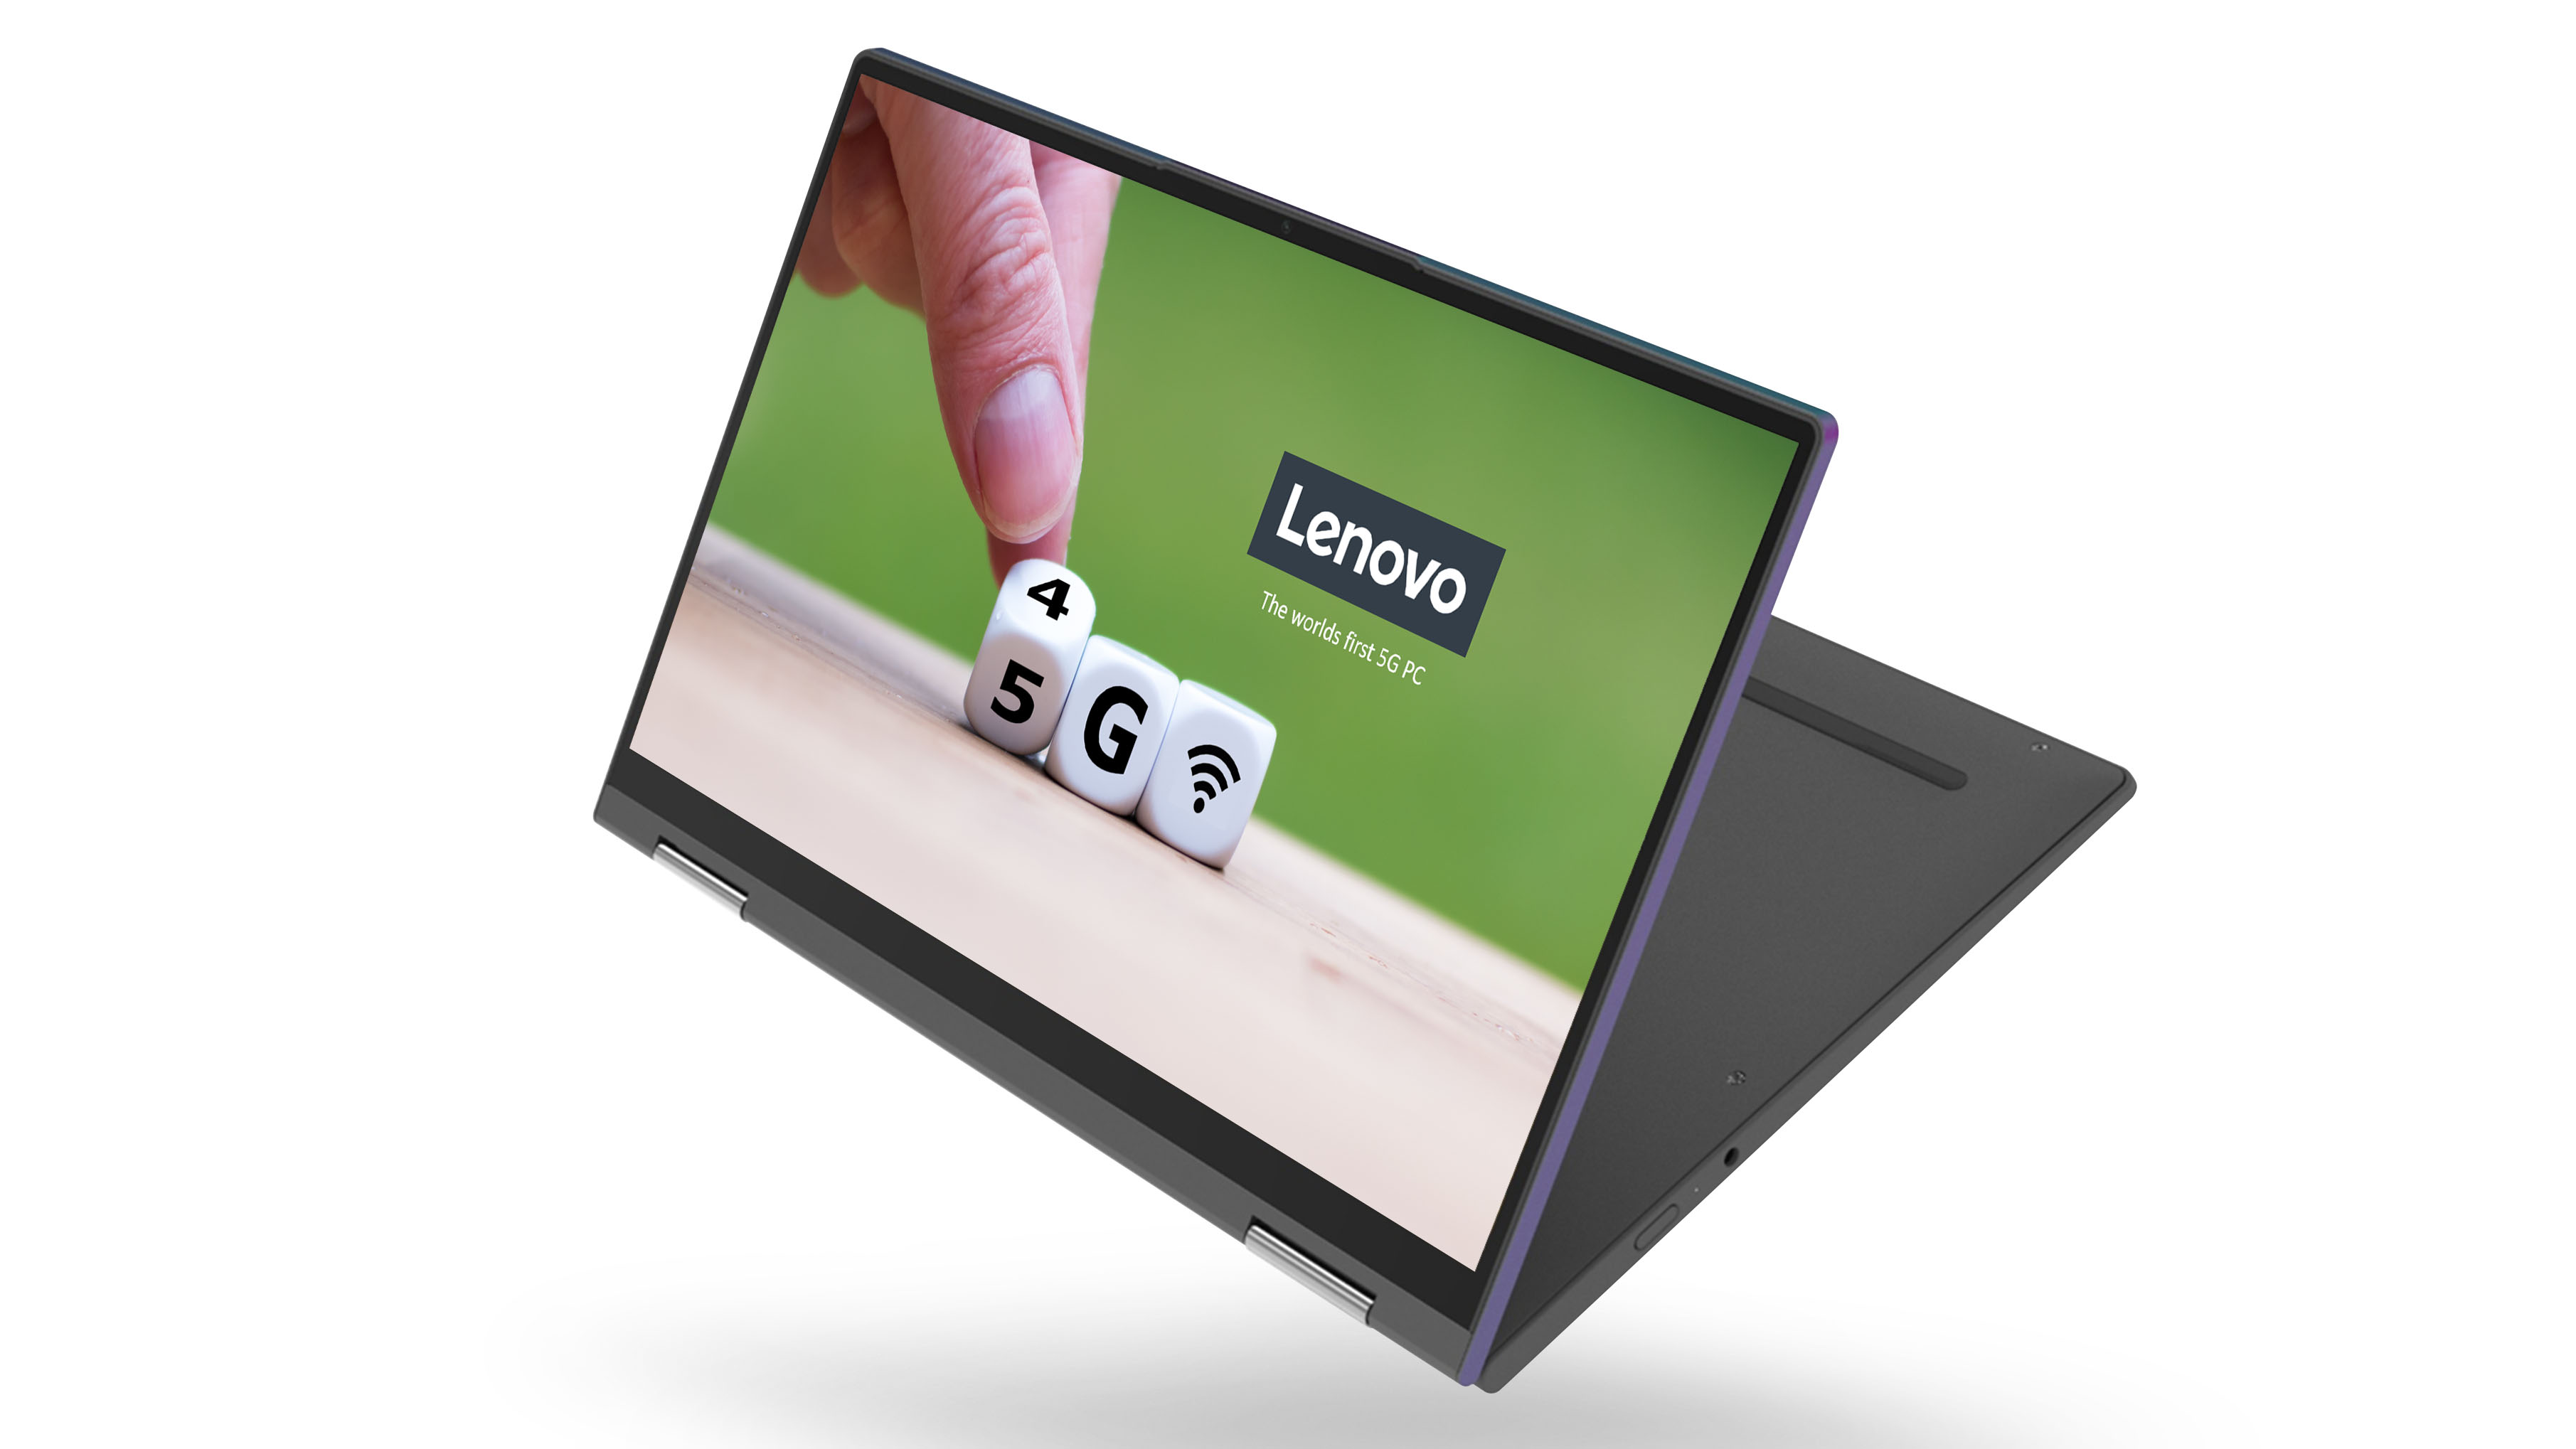 Qualcomm và Lenovo ra
mắt mẫu máy tính 5G đầu tiên trên thế giới sử dụng
Snapdragon 8cx 5G